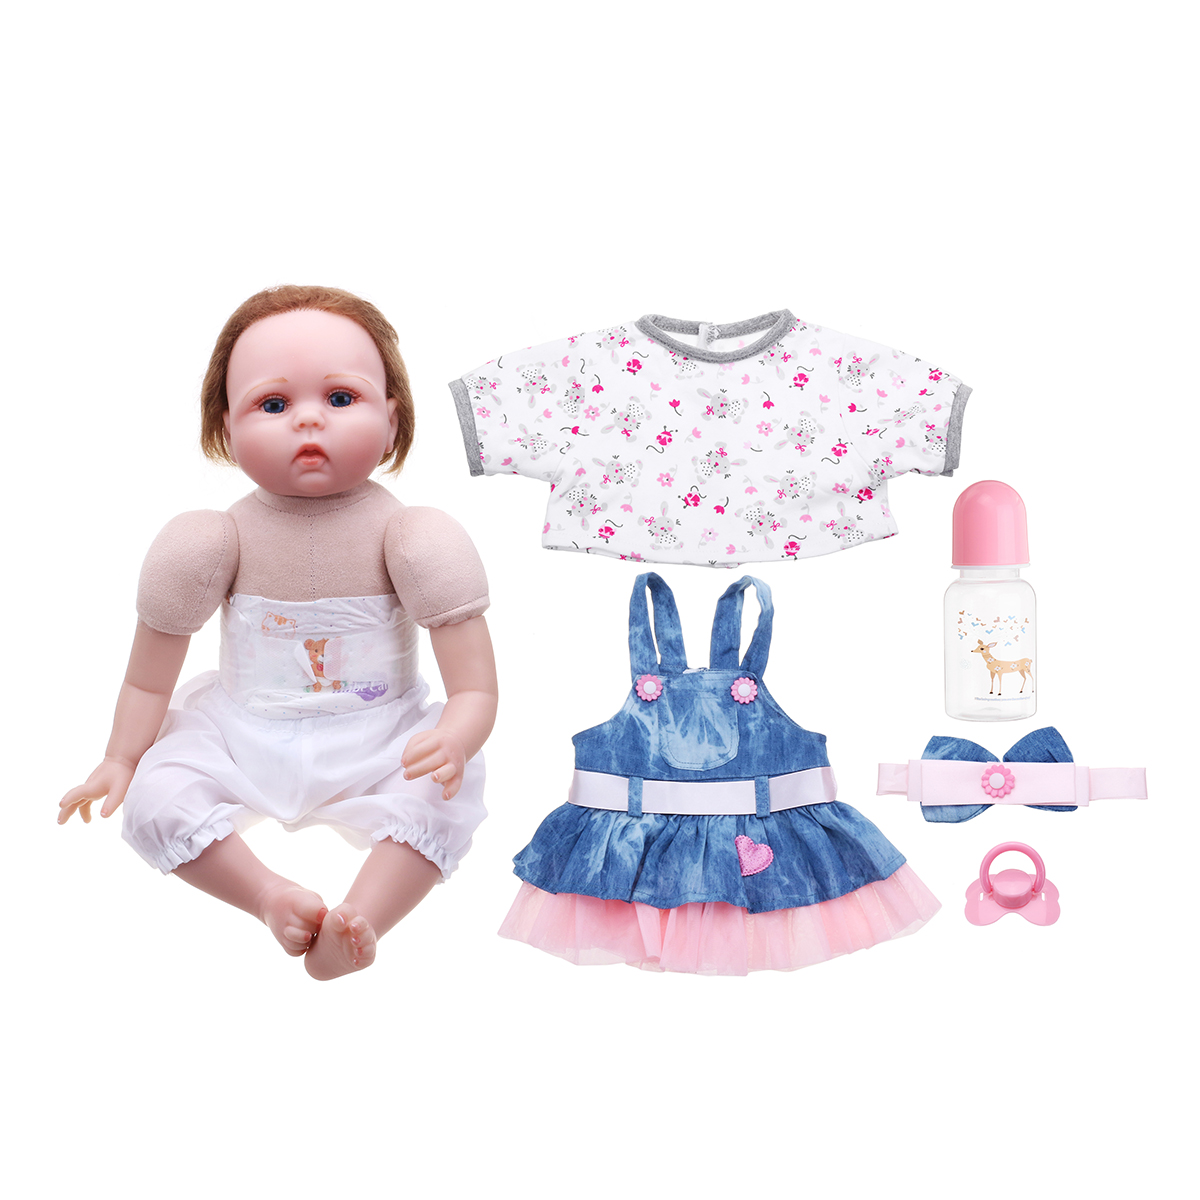 Oubeier-Reborn-Doll-Vinyl-Body-55CM-Handmade-Silicone-Girl-Lovely-Cloth-Toys-Kids-Gift-1414135-8